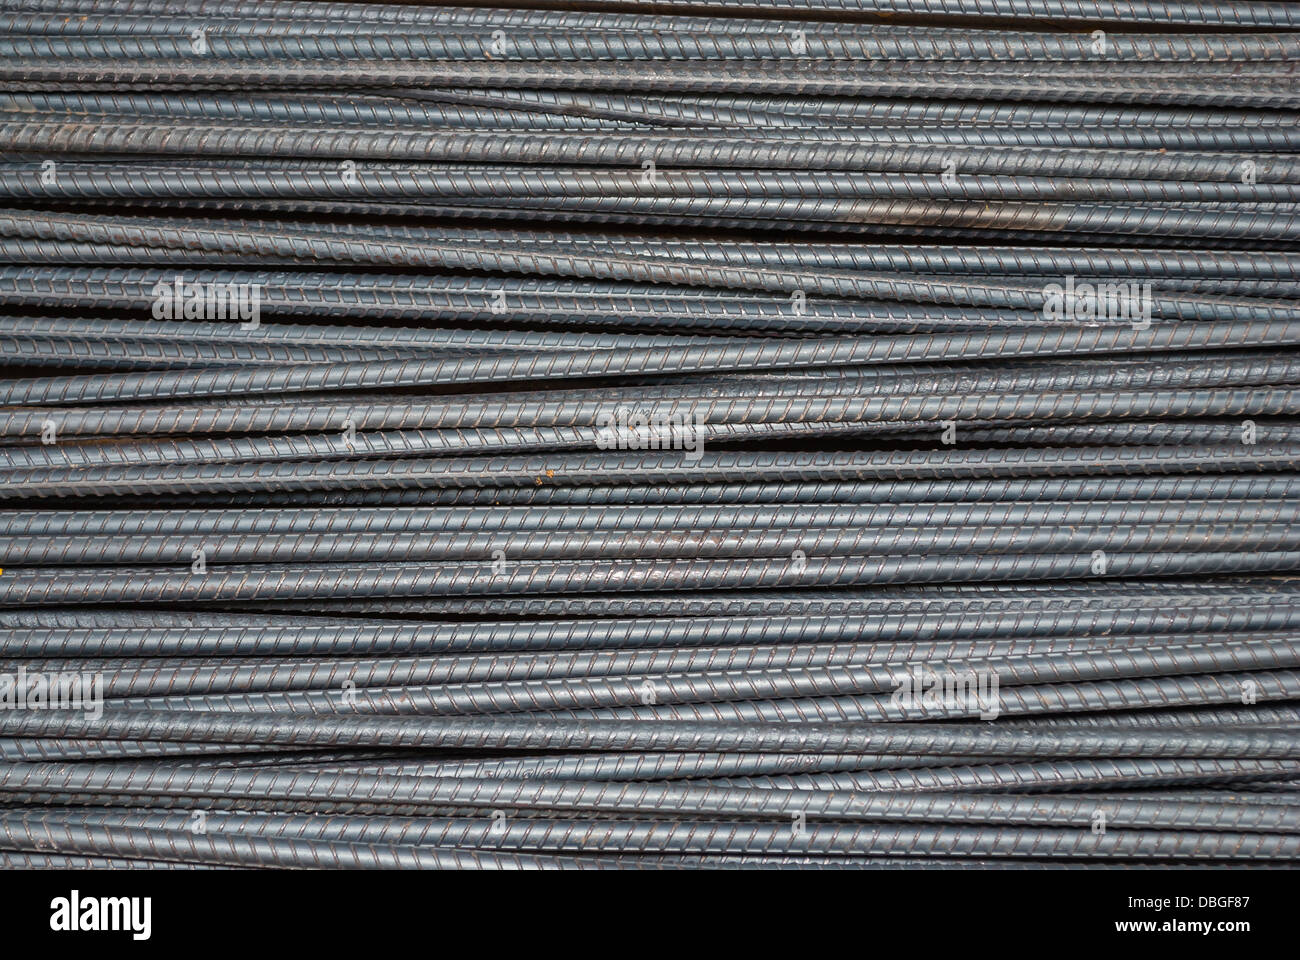 Immagini Stock - Struttura In Metallo Di Una Sfera Fatta Di Tondini Di Ferro  Ravvicinati.. Image 145684611